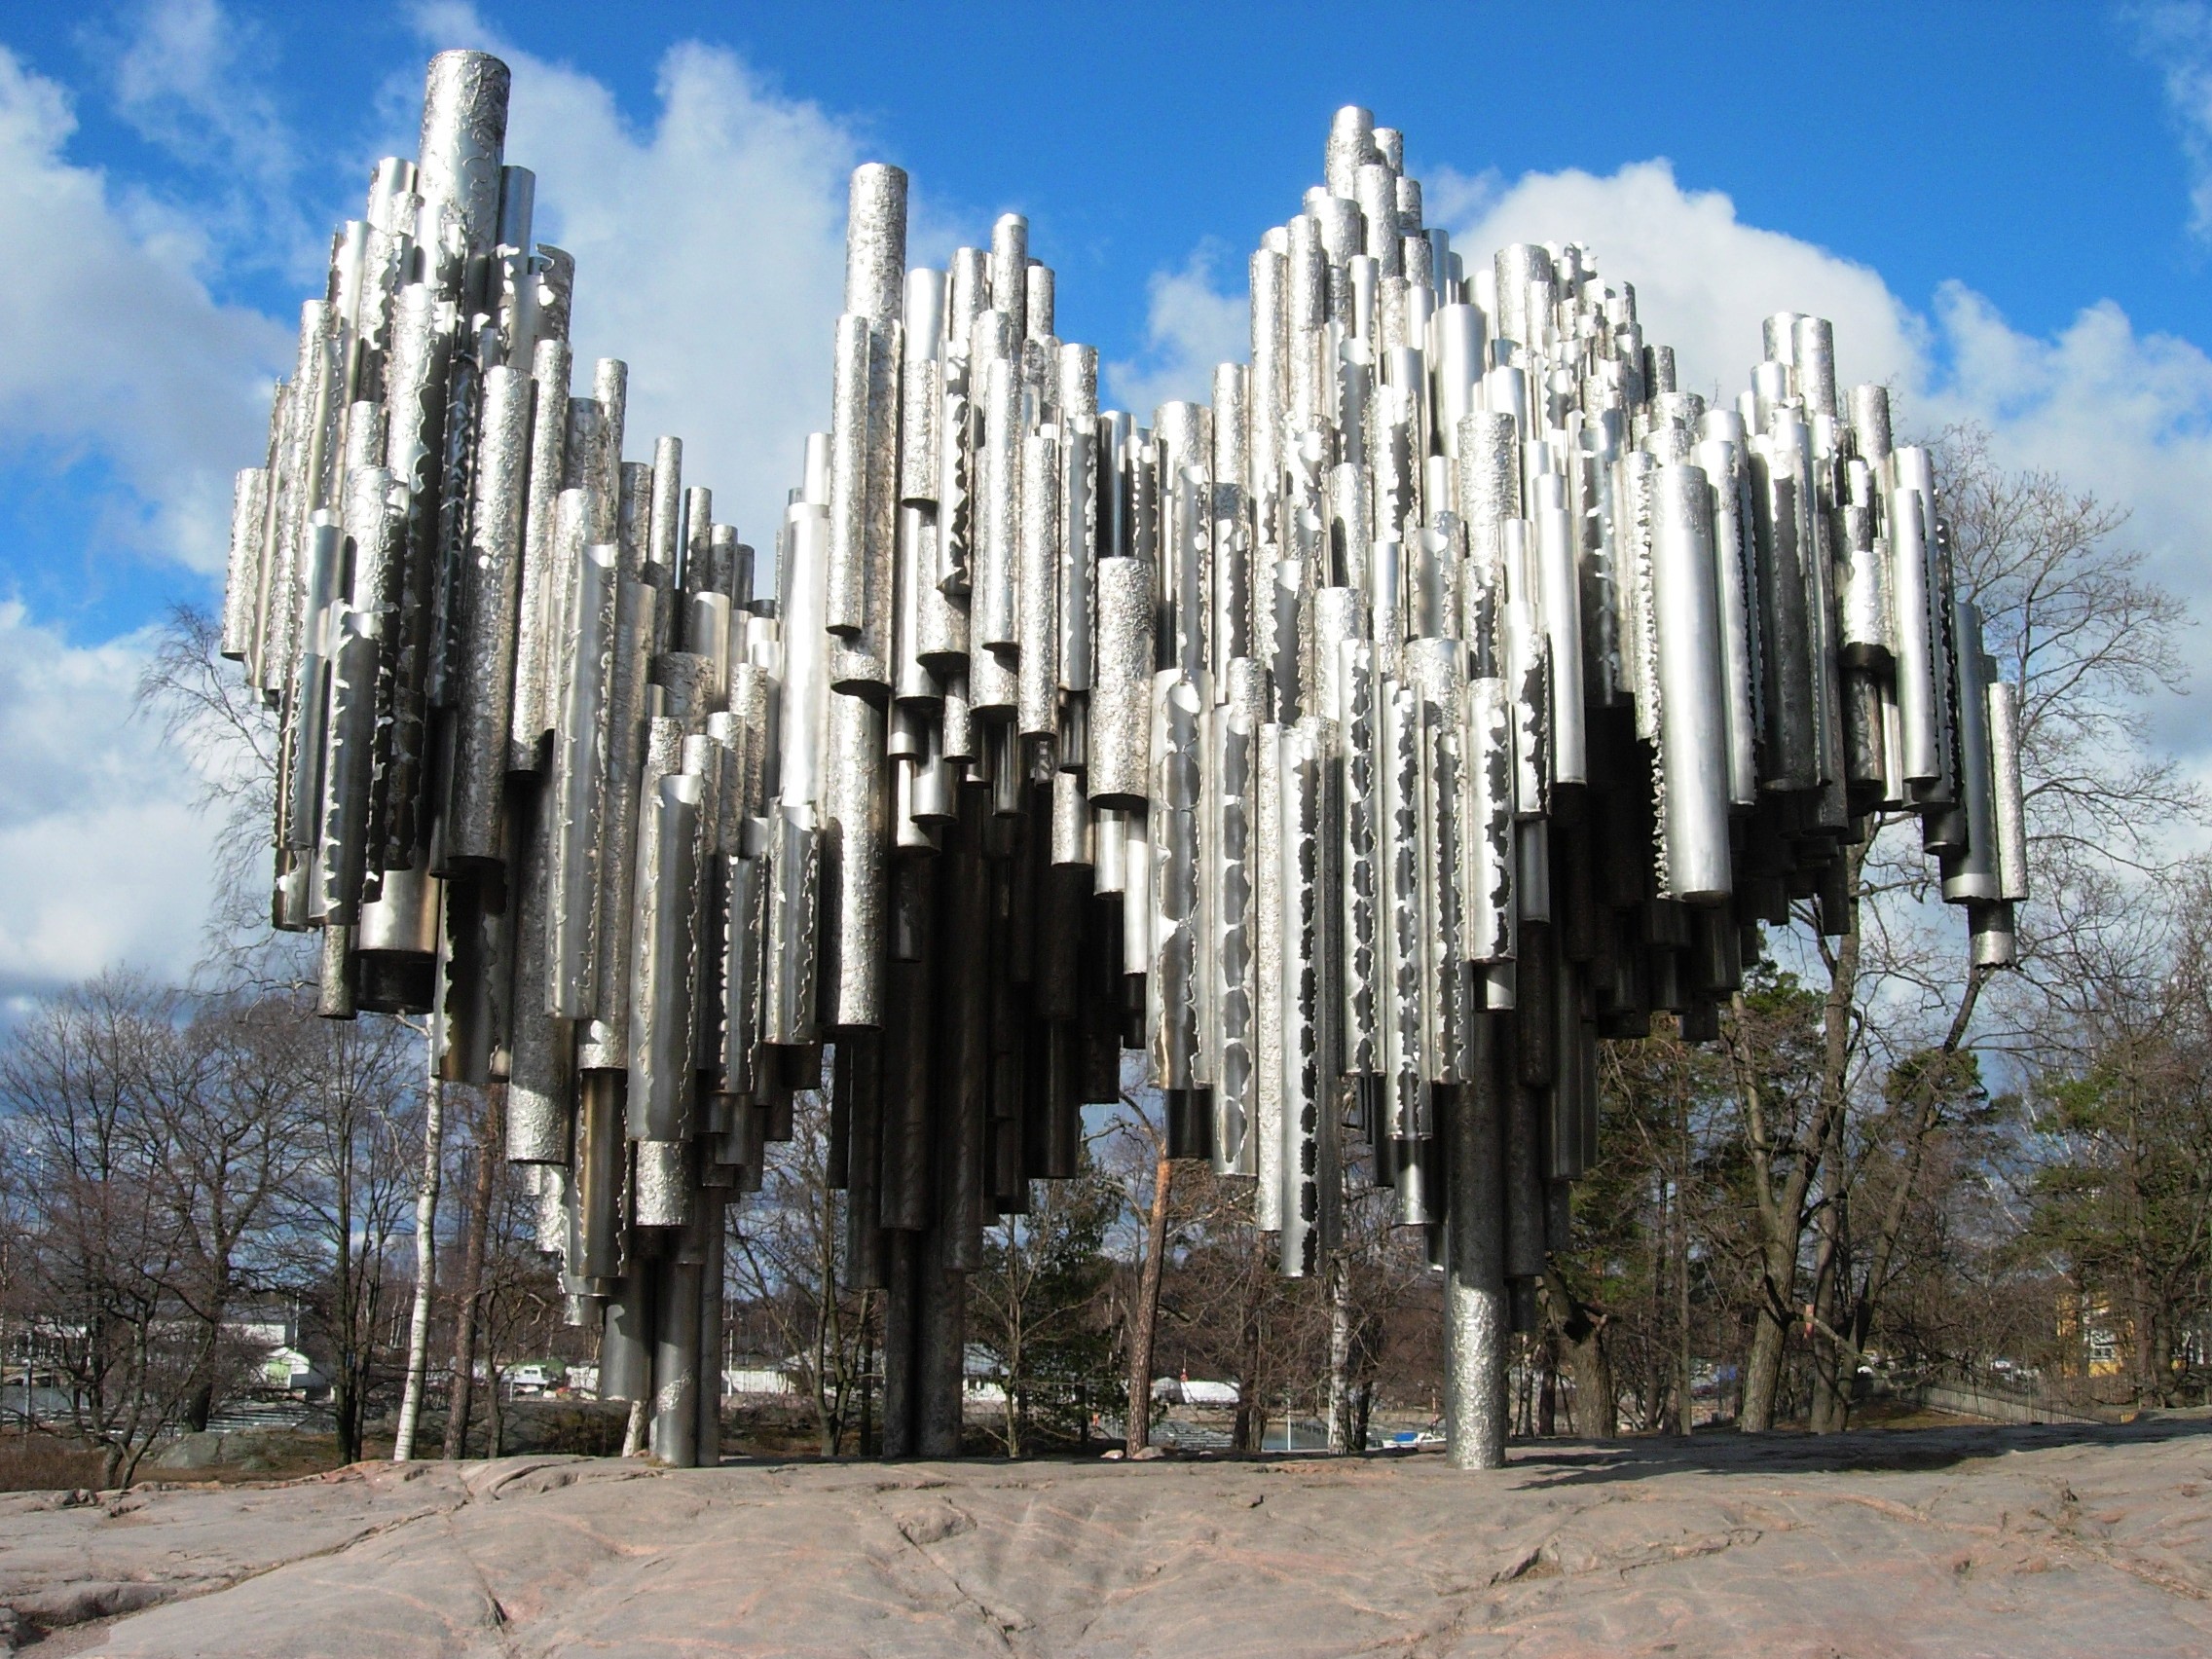 Đài tưởng niệm nhà soạn nhạc Sibelius - Sibelius Monument | Yeudulich